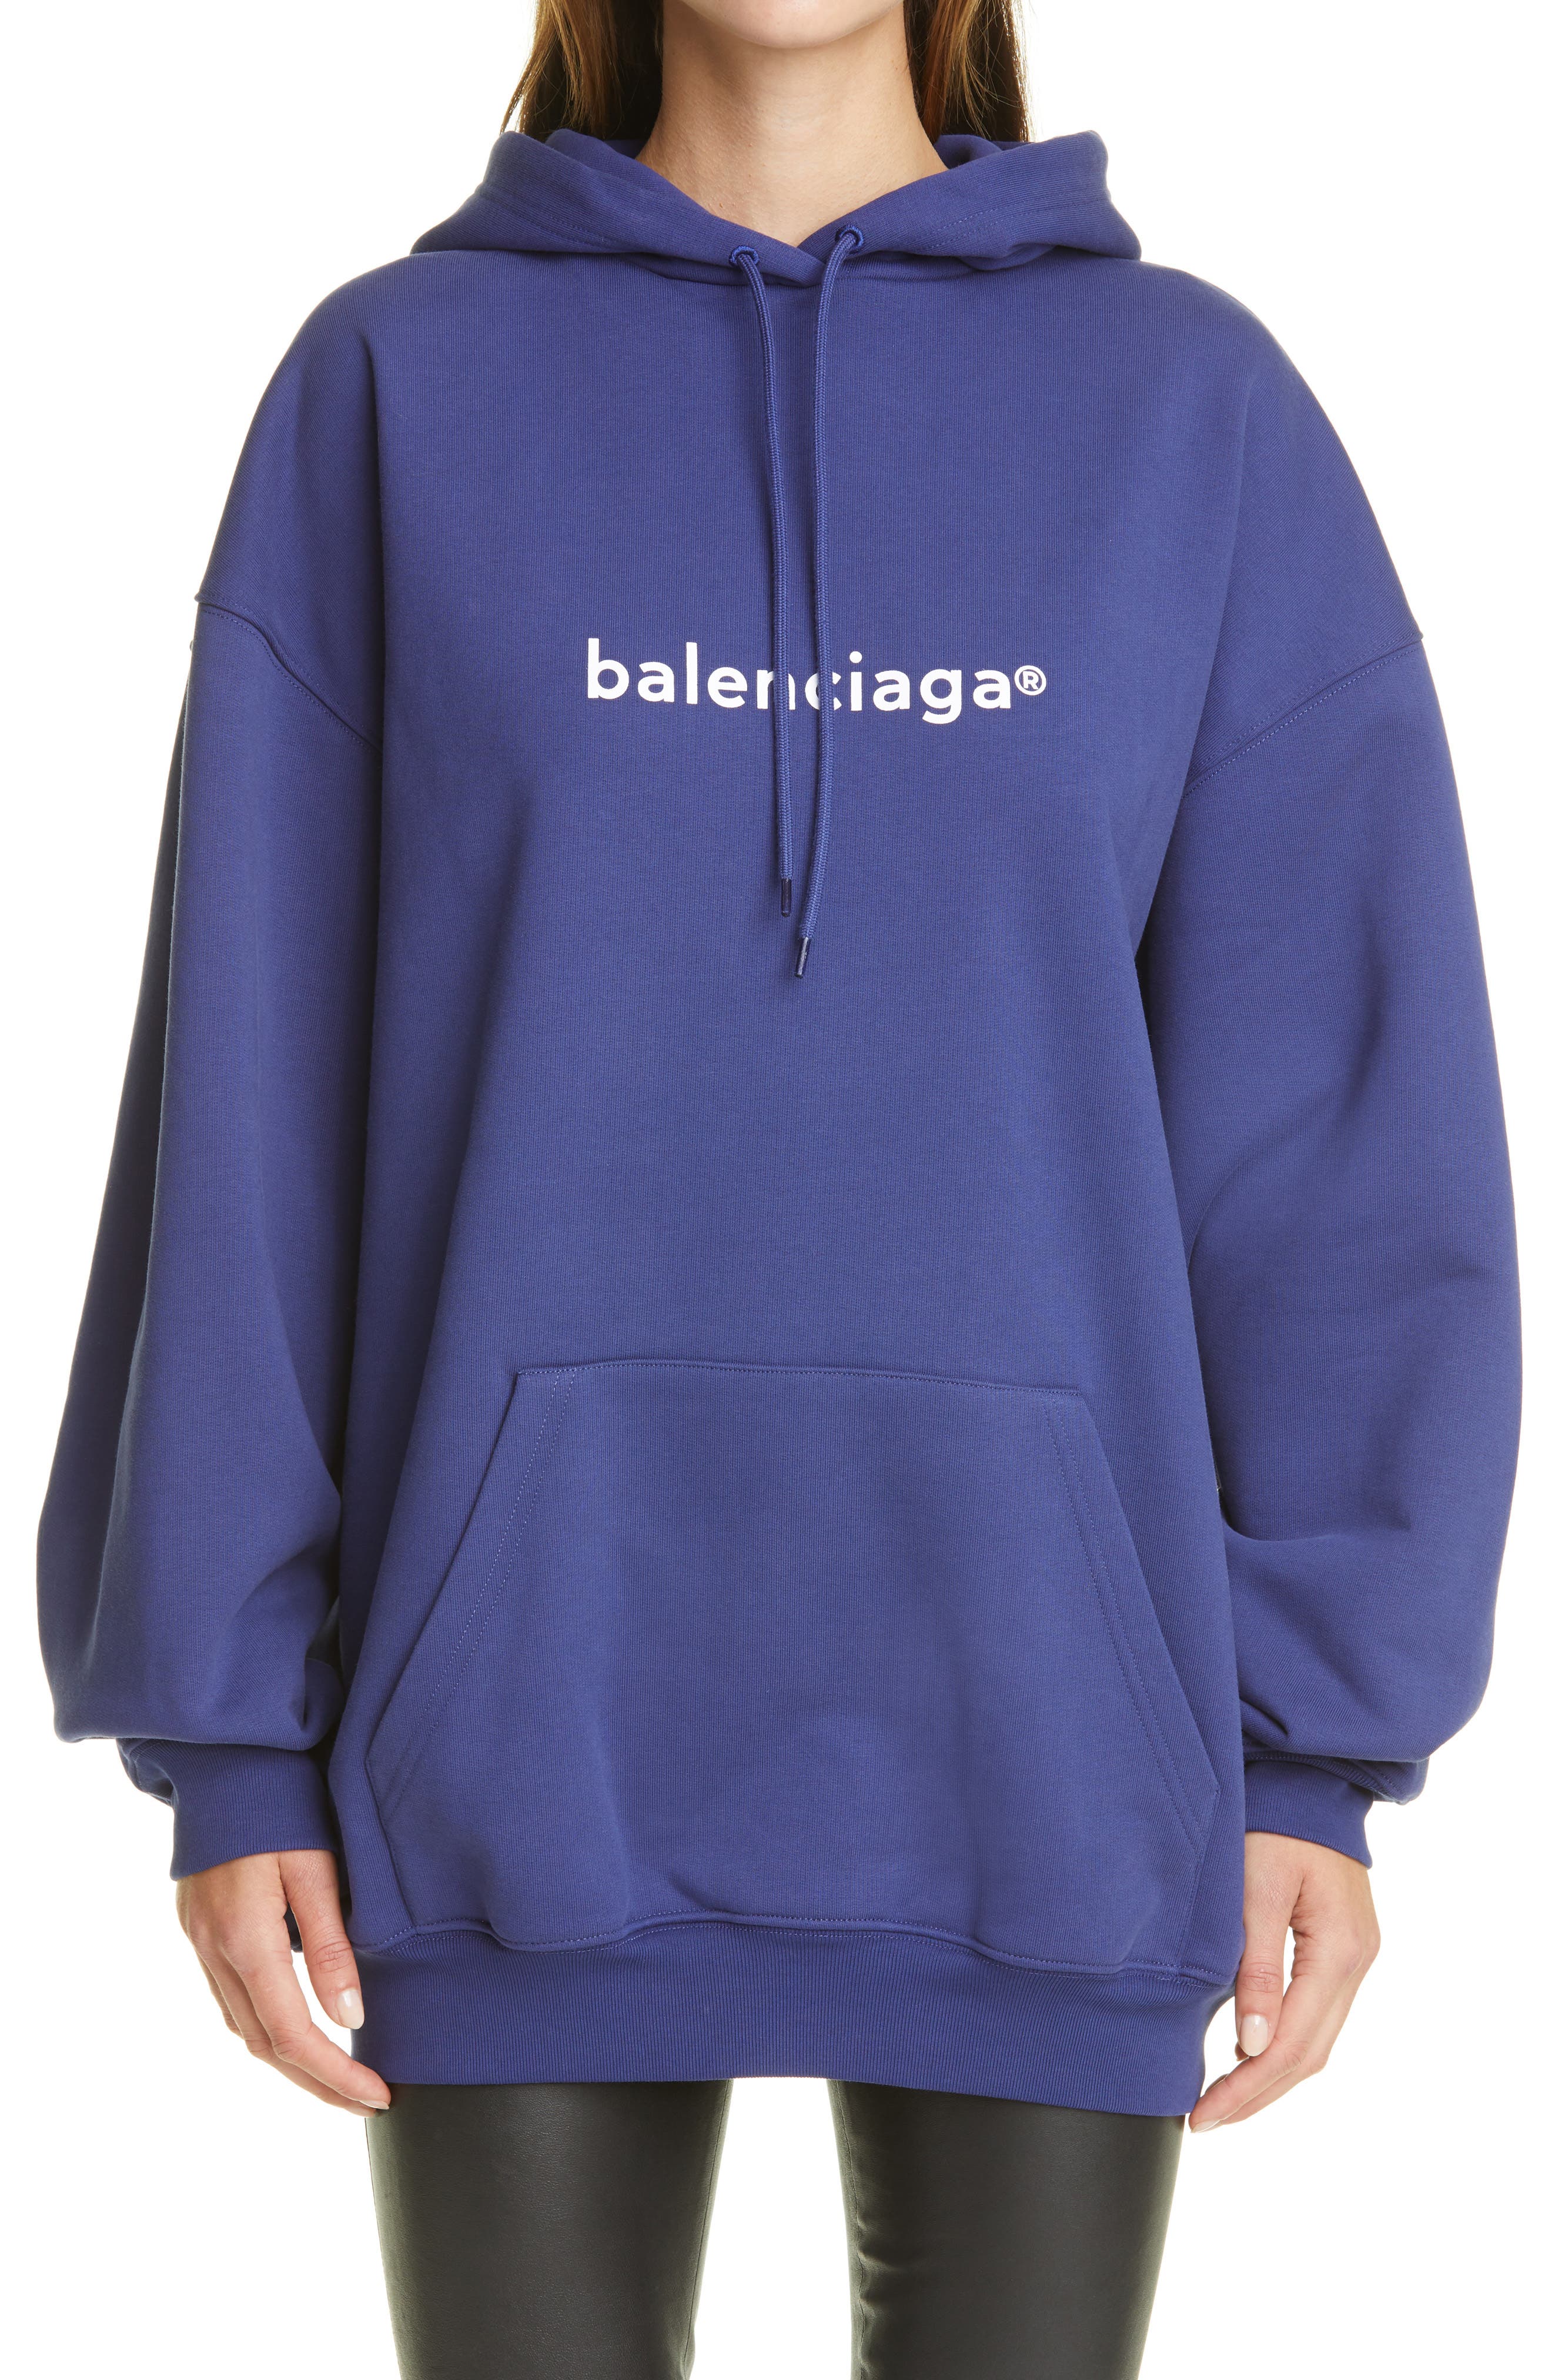 Balenciaga Clothing Sale, 55% OFF | www.ingeniovirtual.com